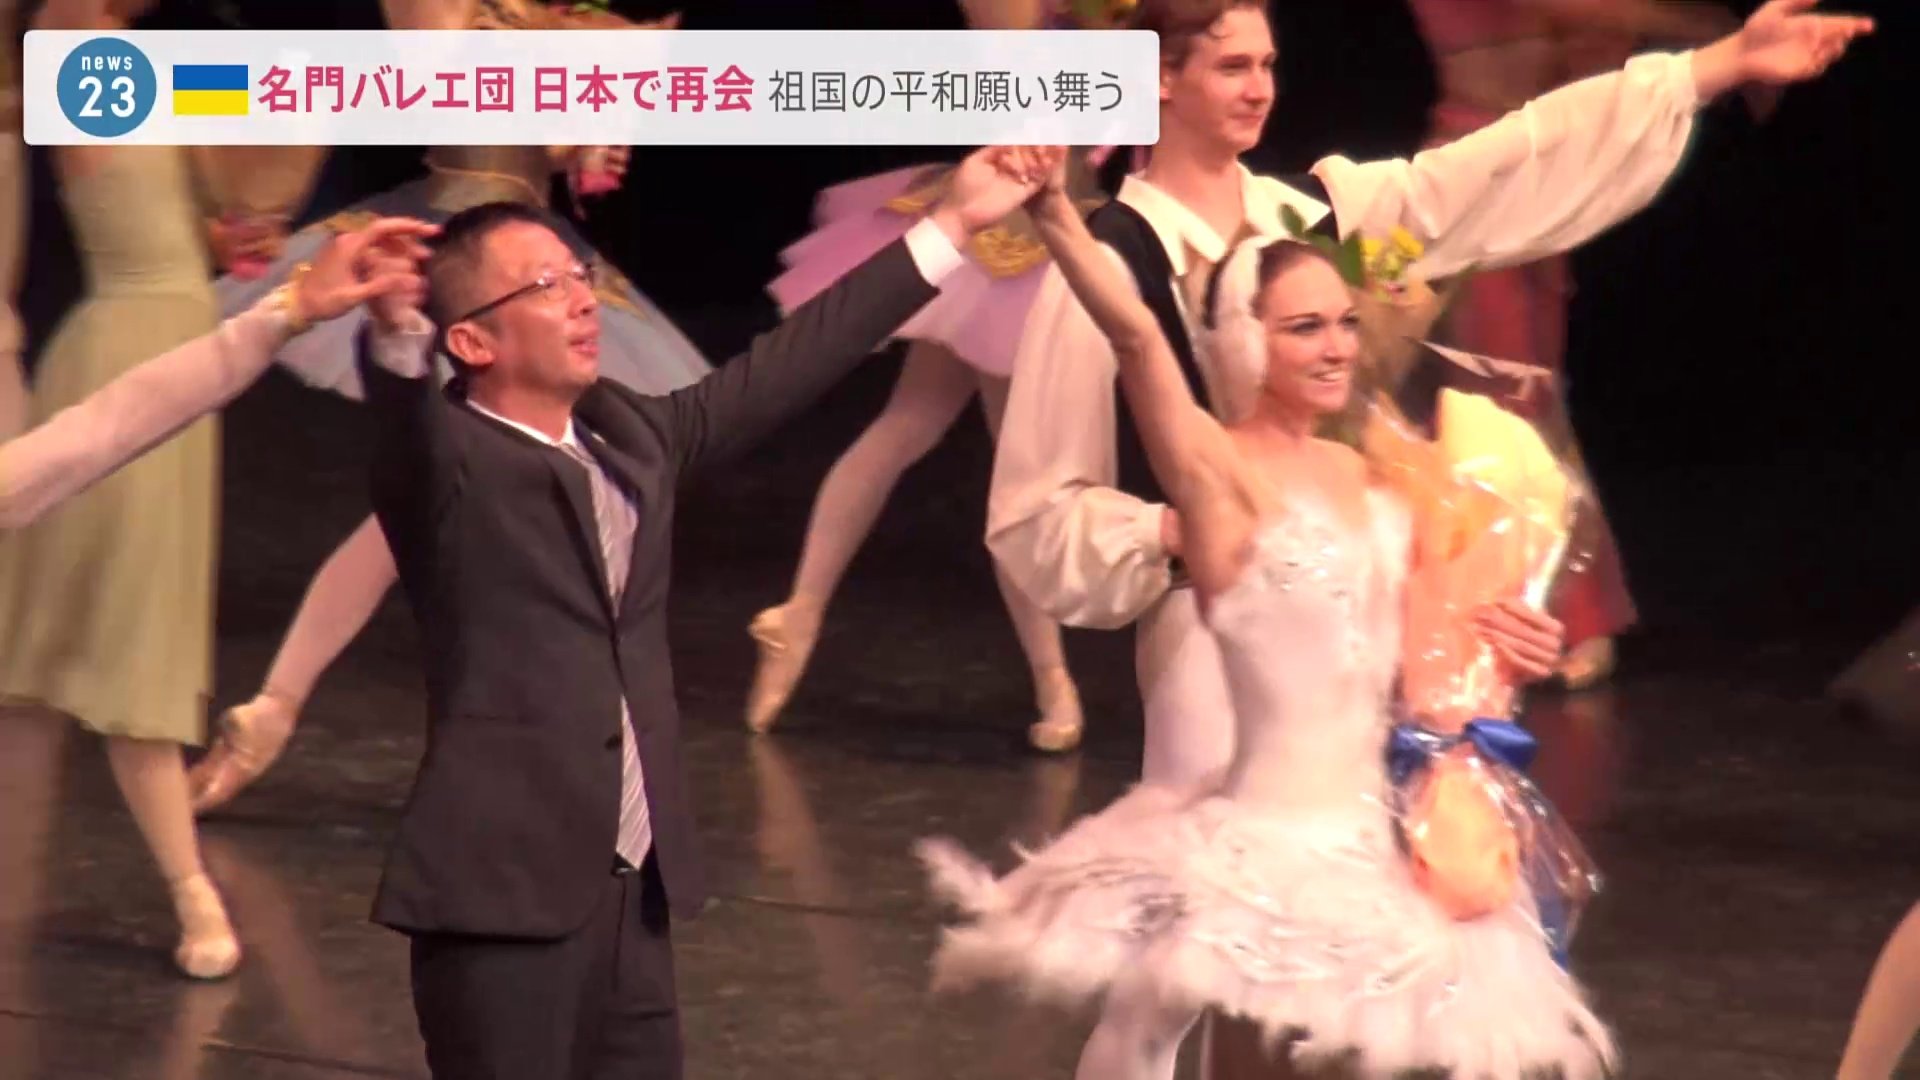 「また一緒に踊りたい」ウクライナの国立名門バレエ団が日本で再会 祖国の平和願い舞う